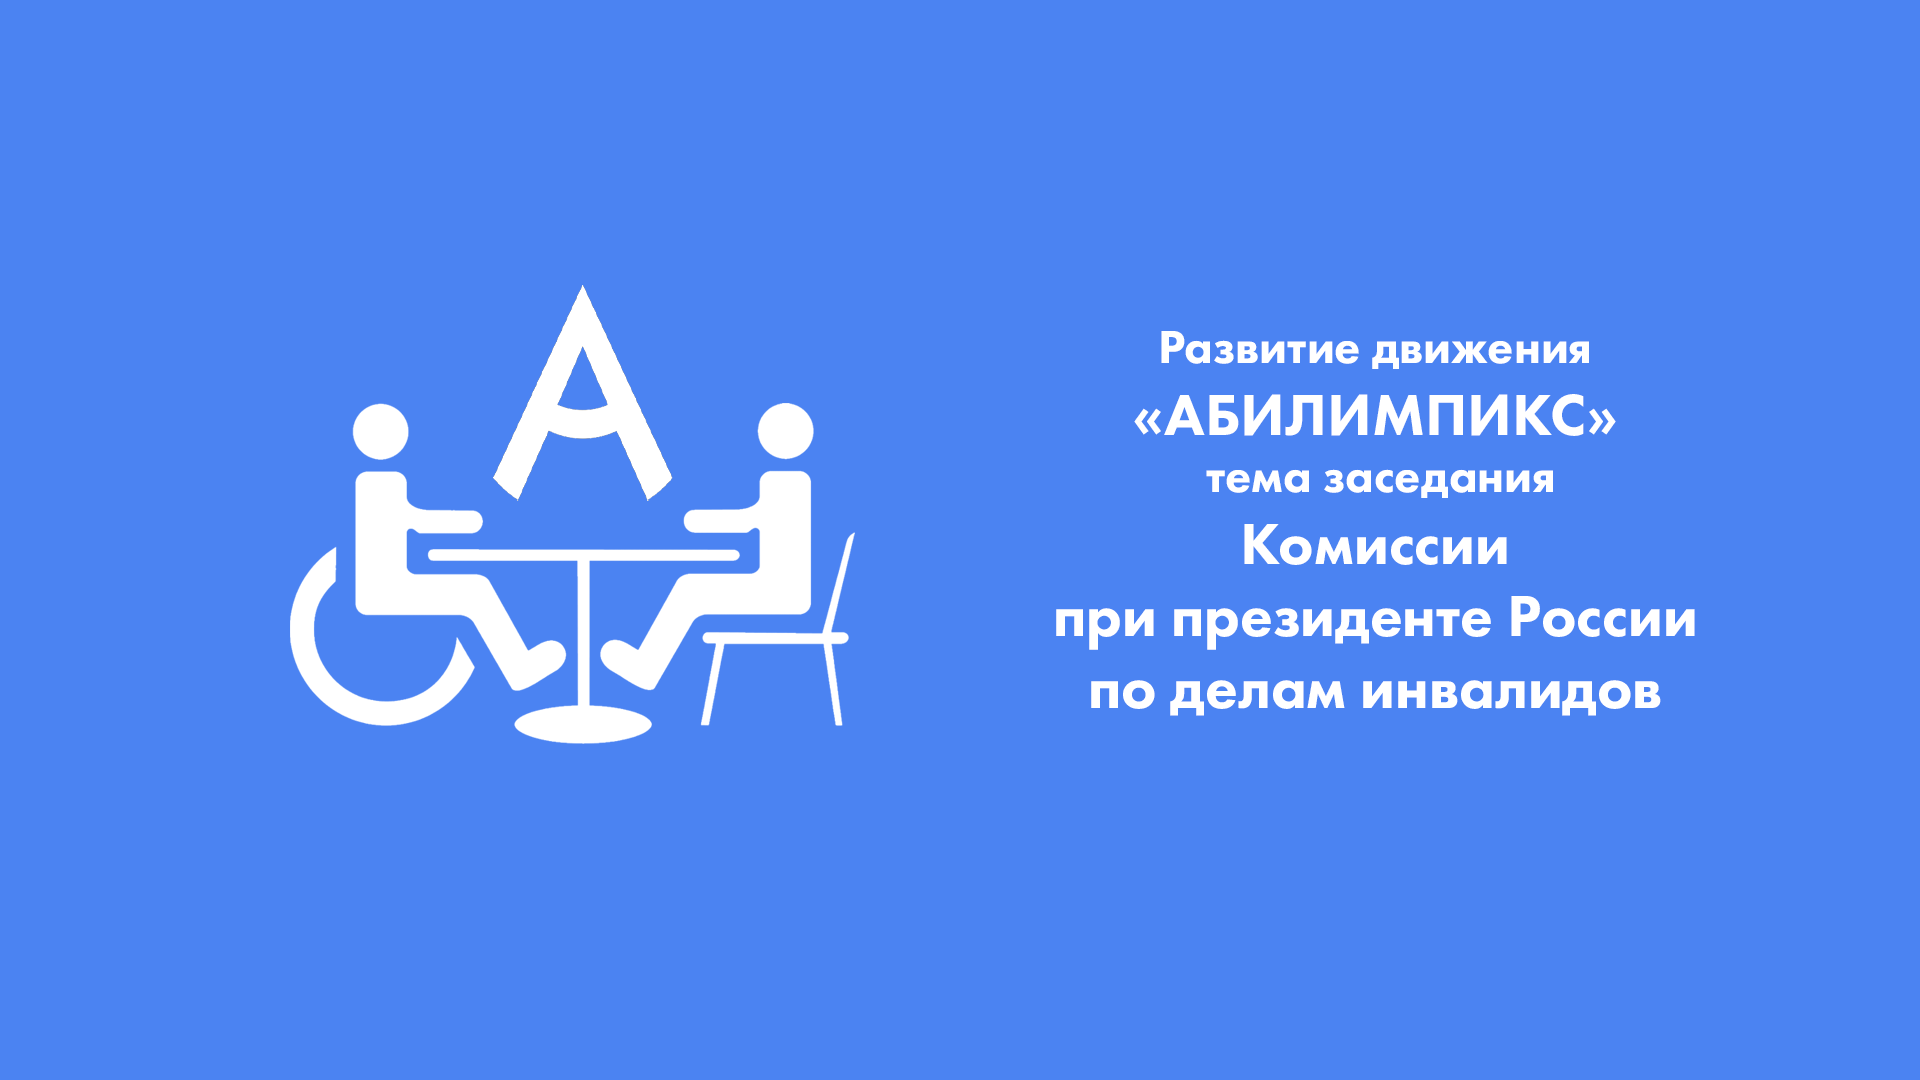 Развитие движения «Абилимпикс» стало темой заседания Комиссии при президенте России по делам инвалидов